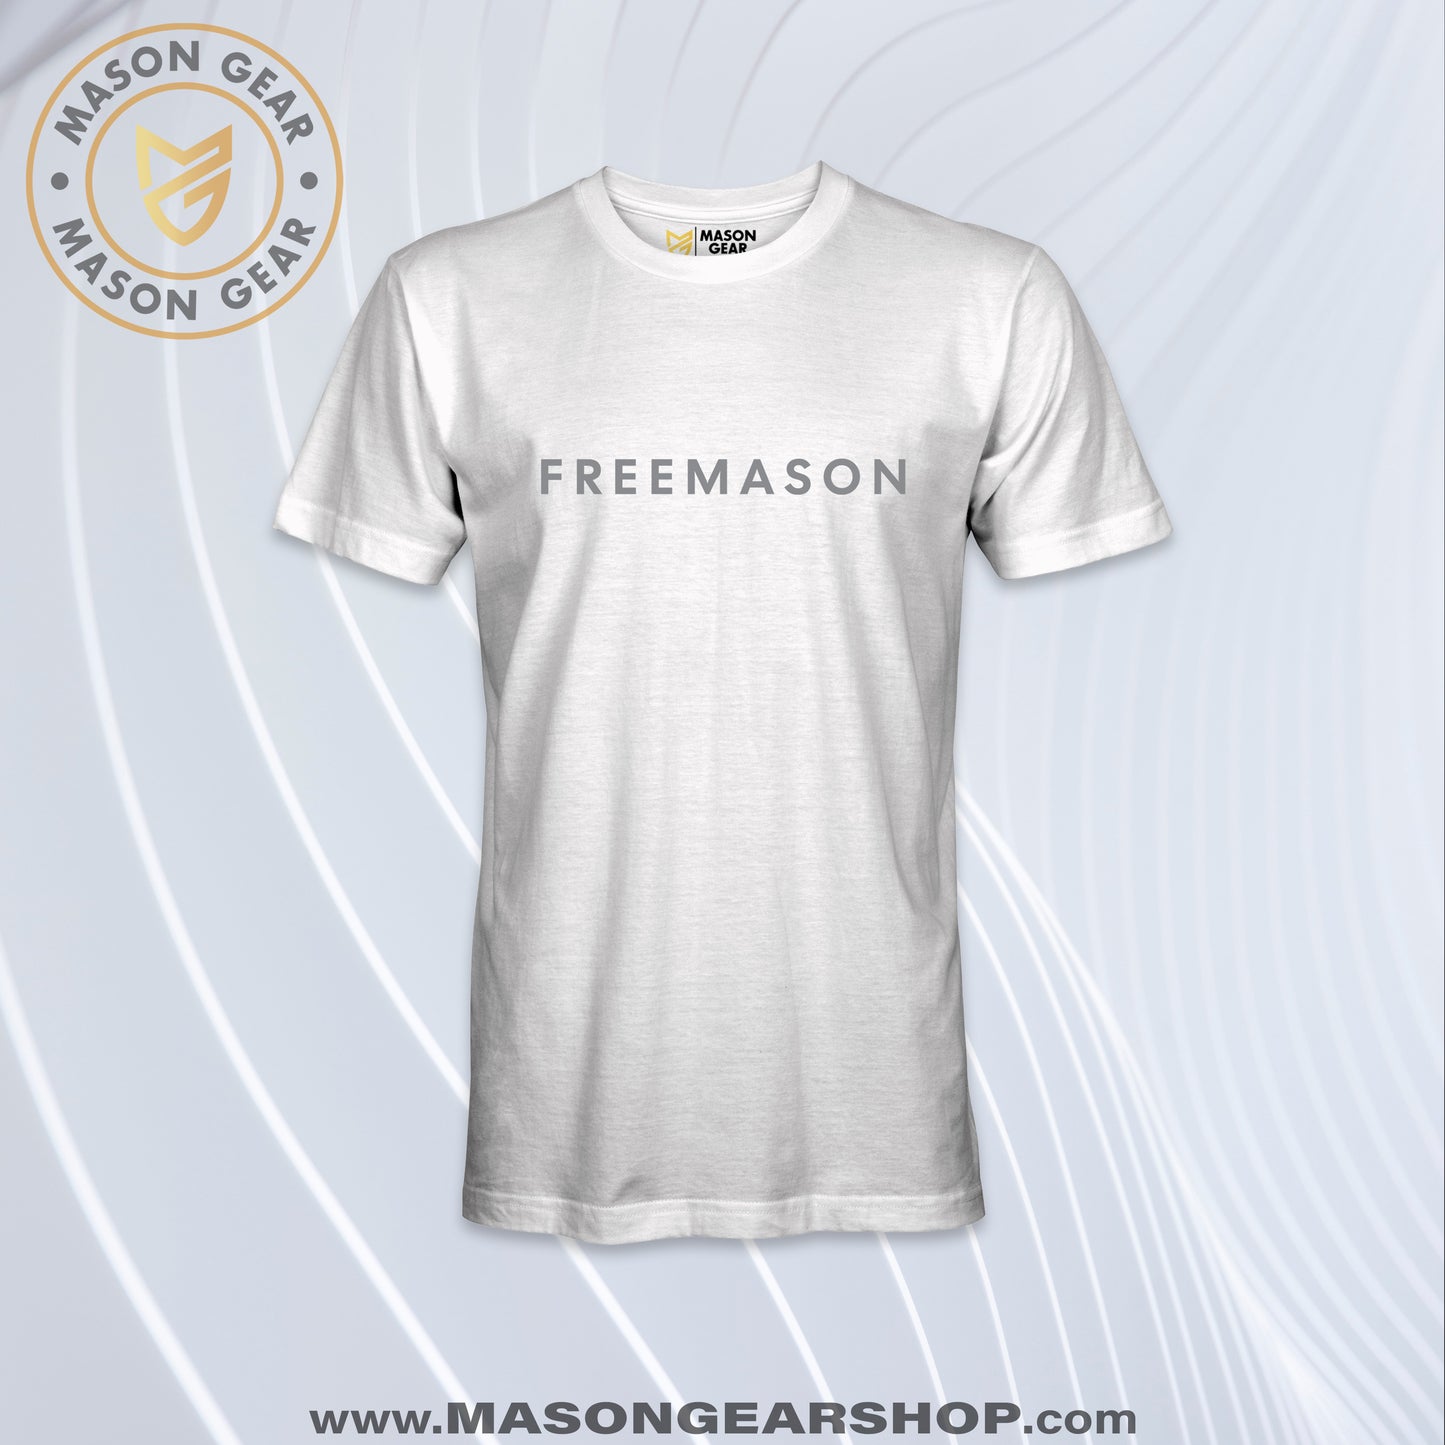 Freemason - T-Shirt